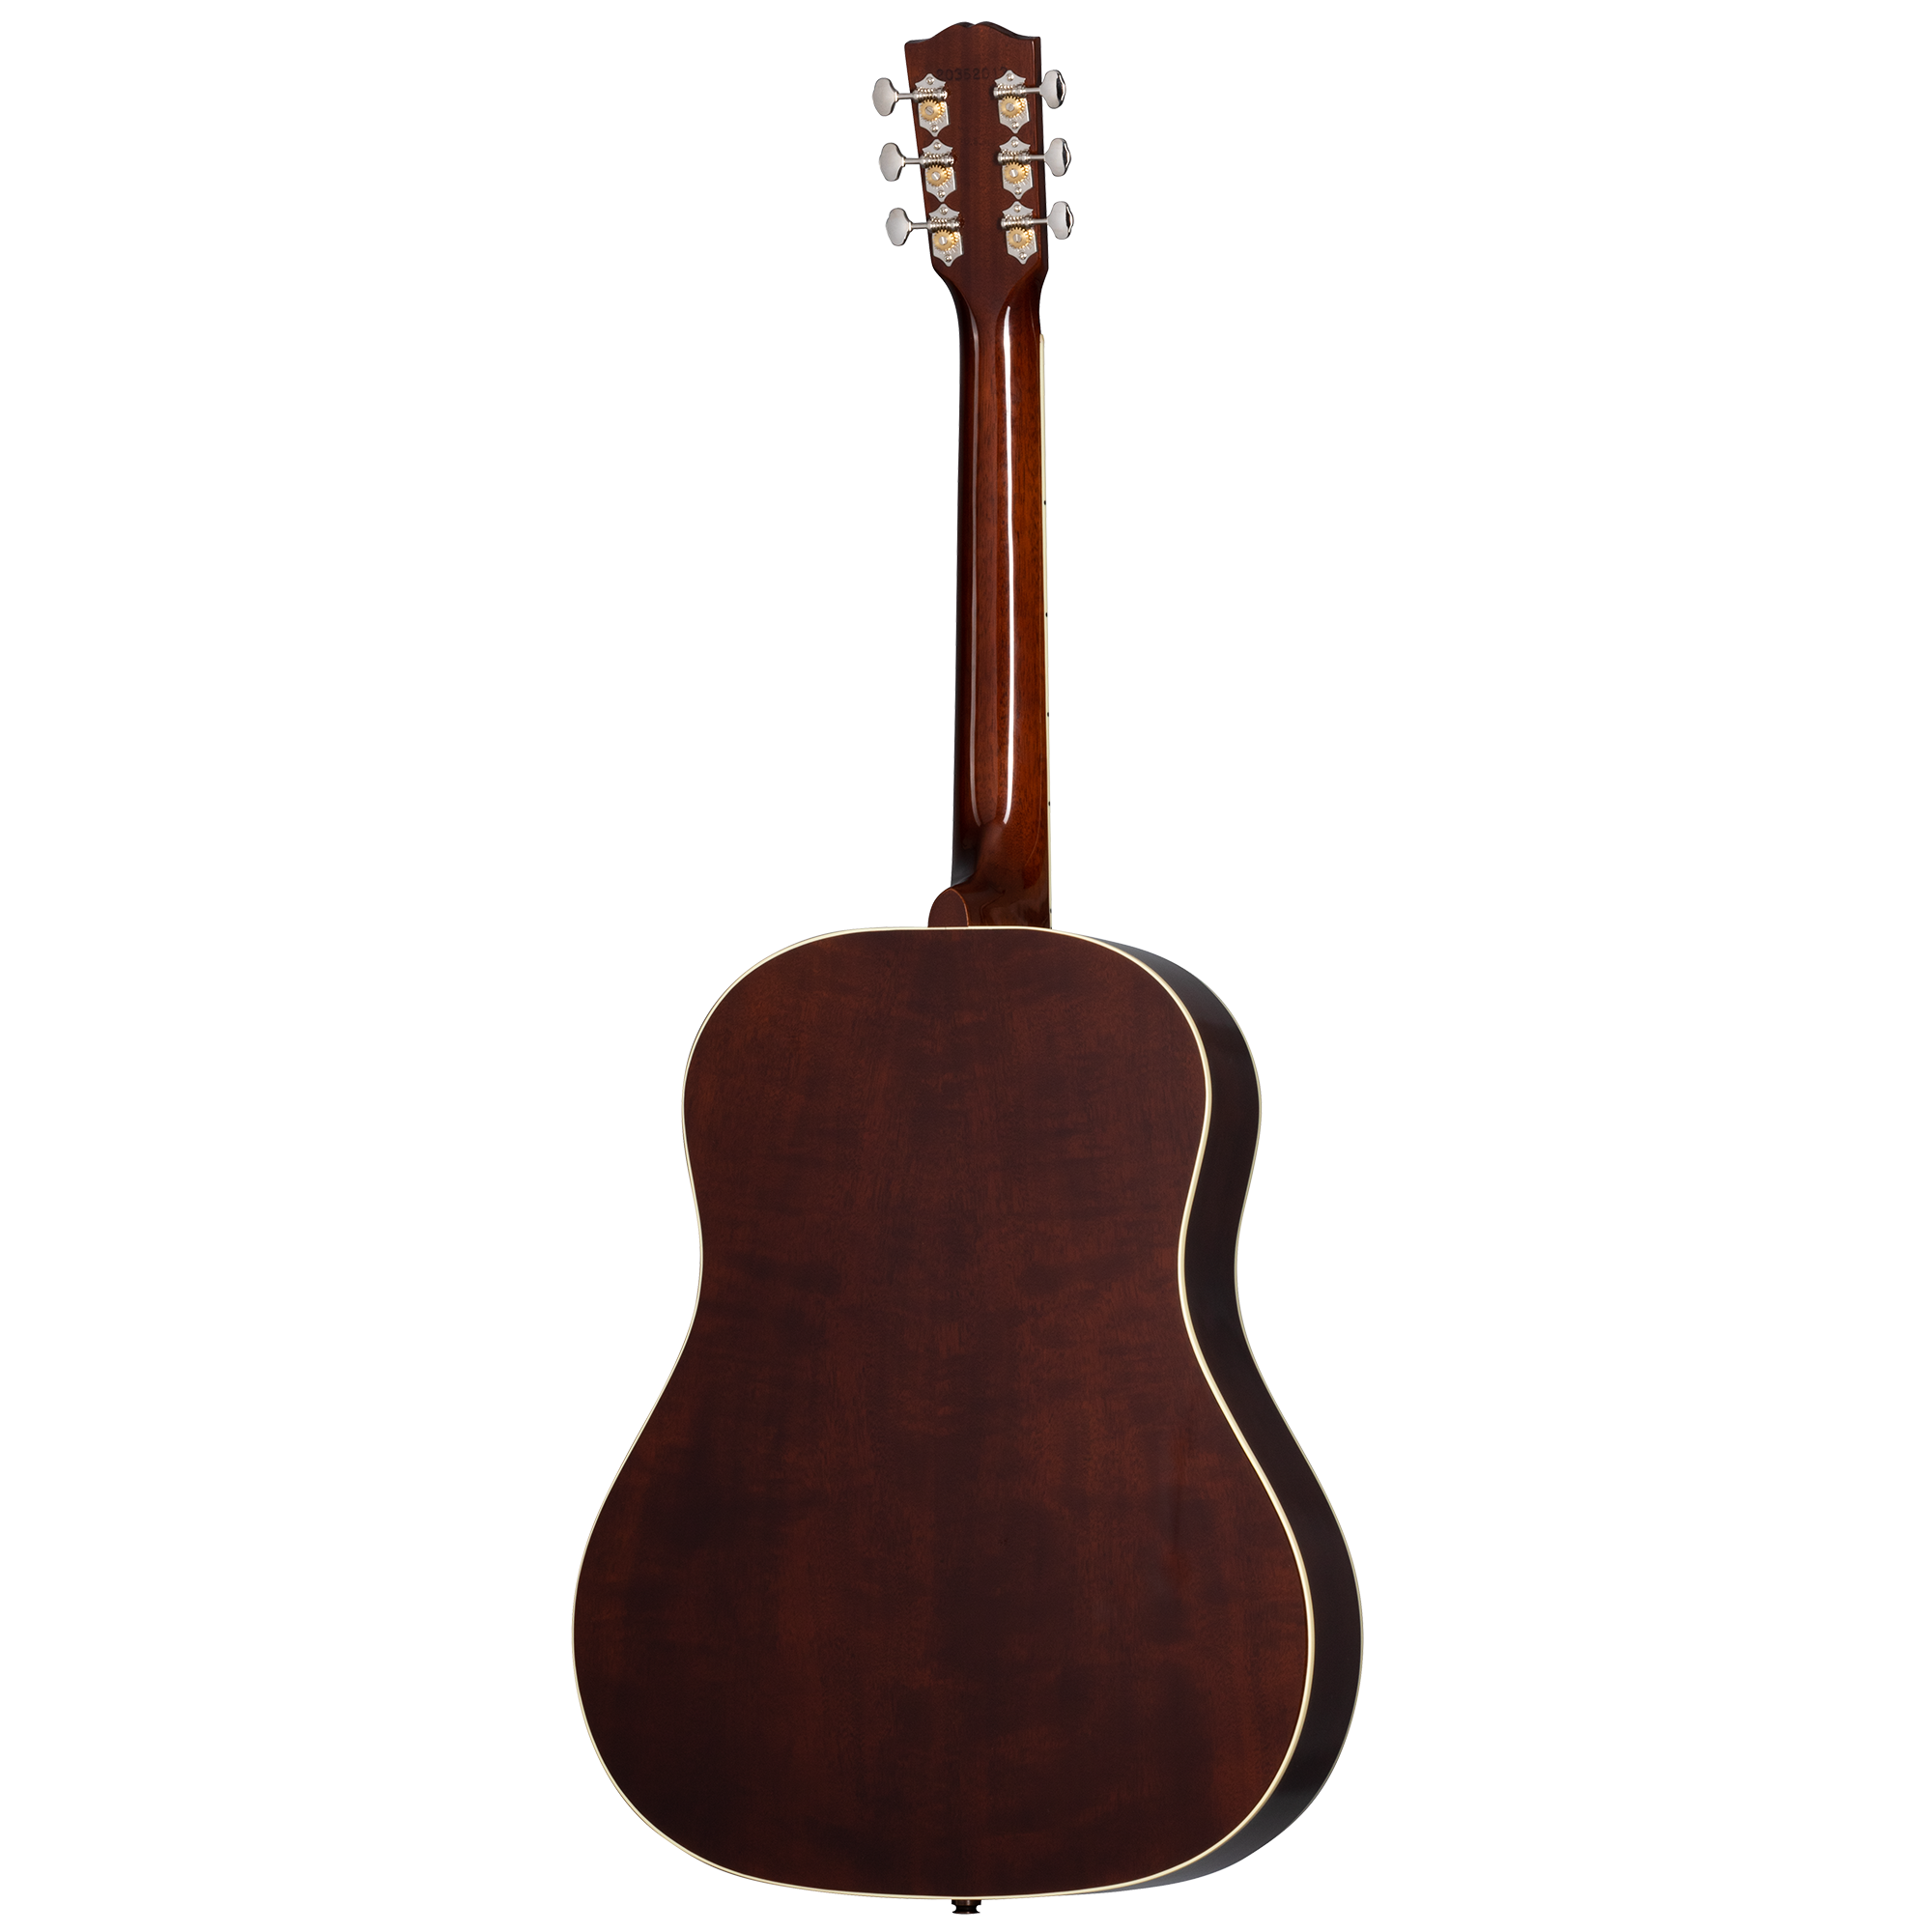 Keb' Mo' “3.0” 12-Fret J-45 | Gibson